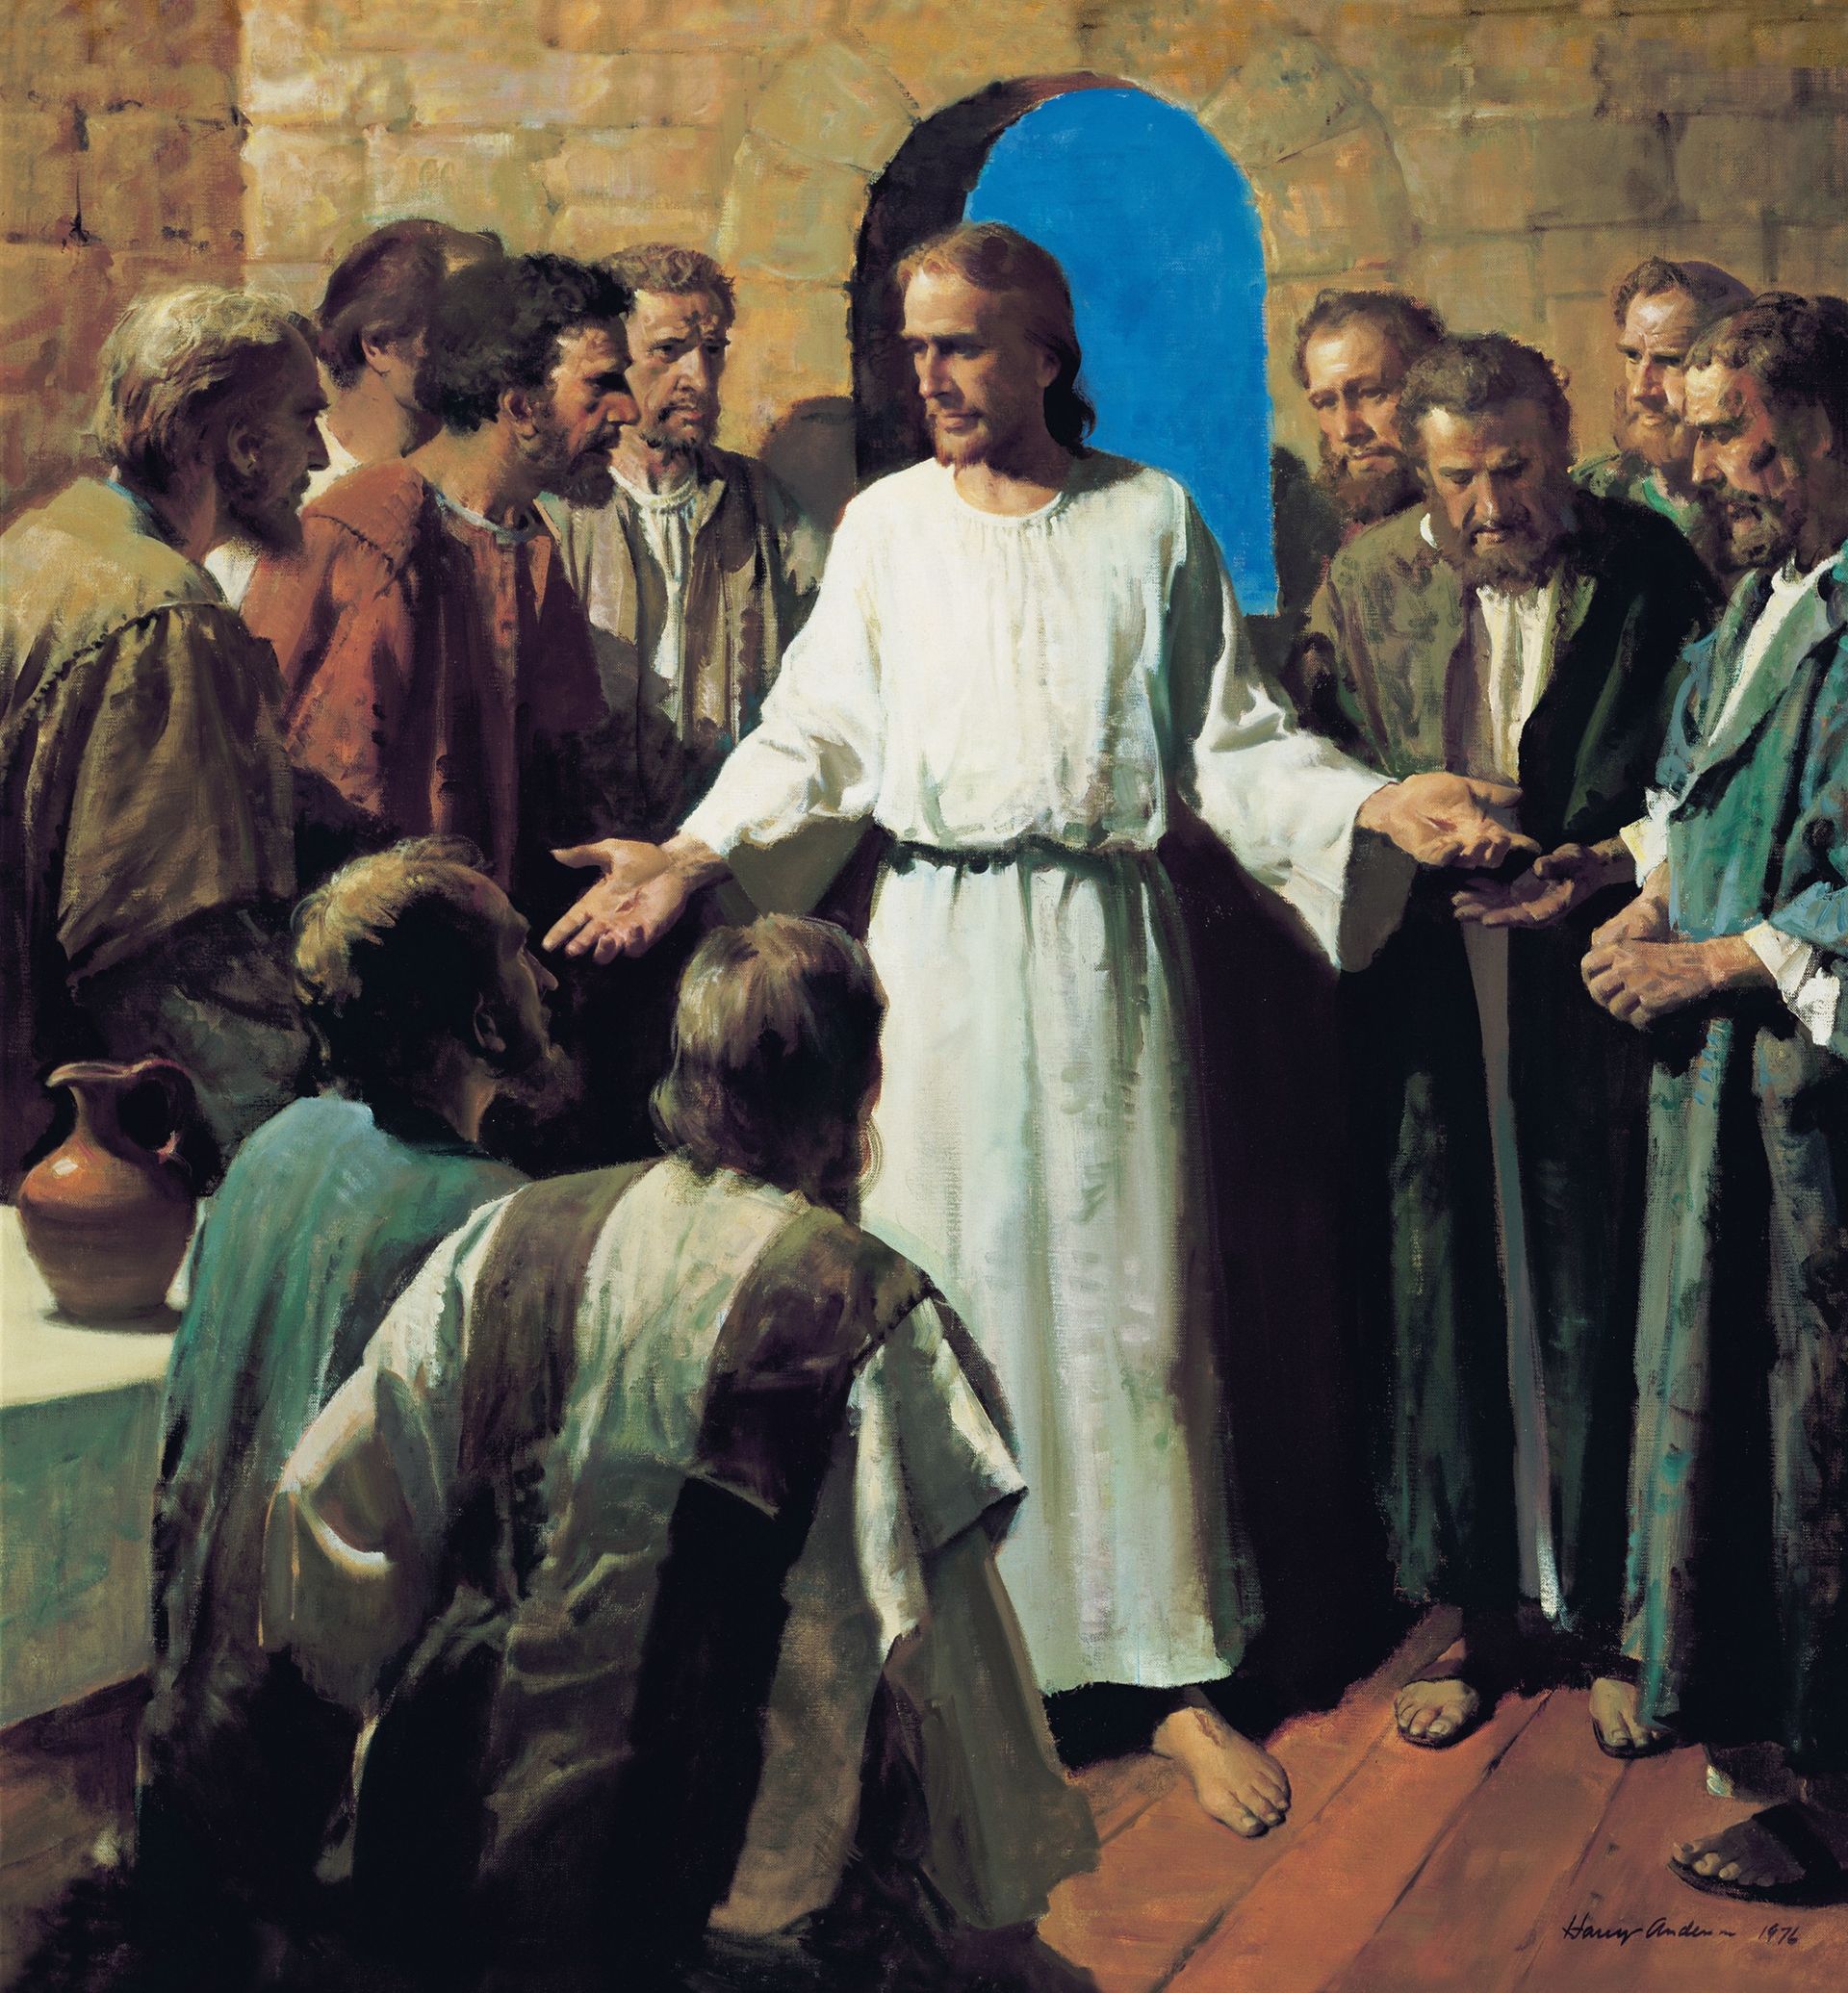 Jesus viser sine sår (Se mine hænder og fødder)